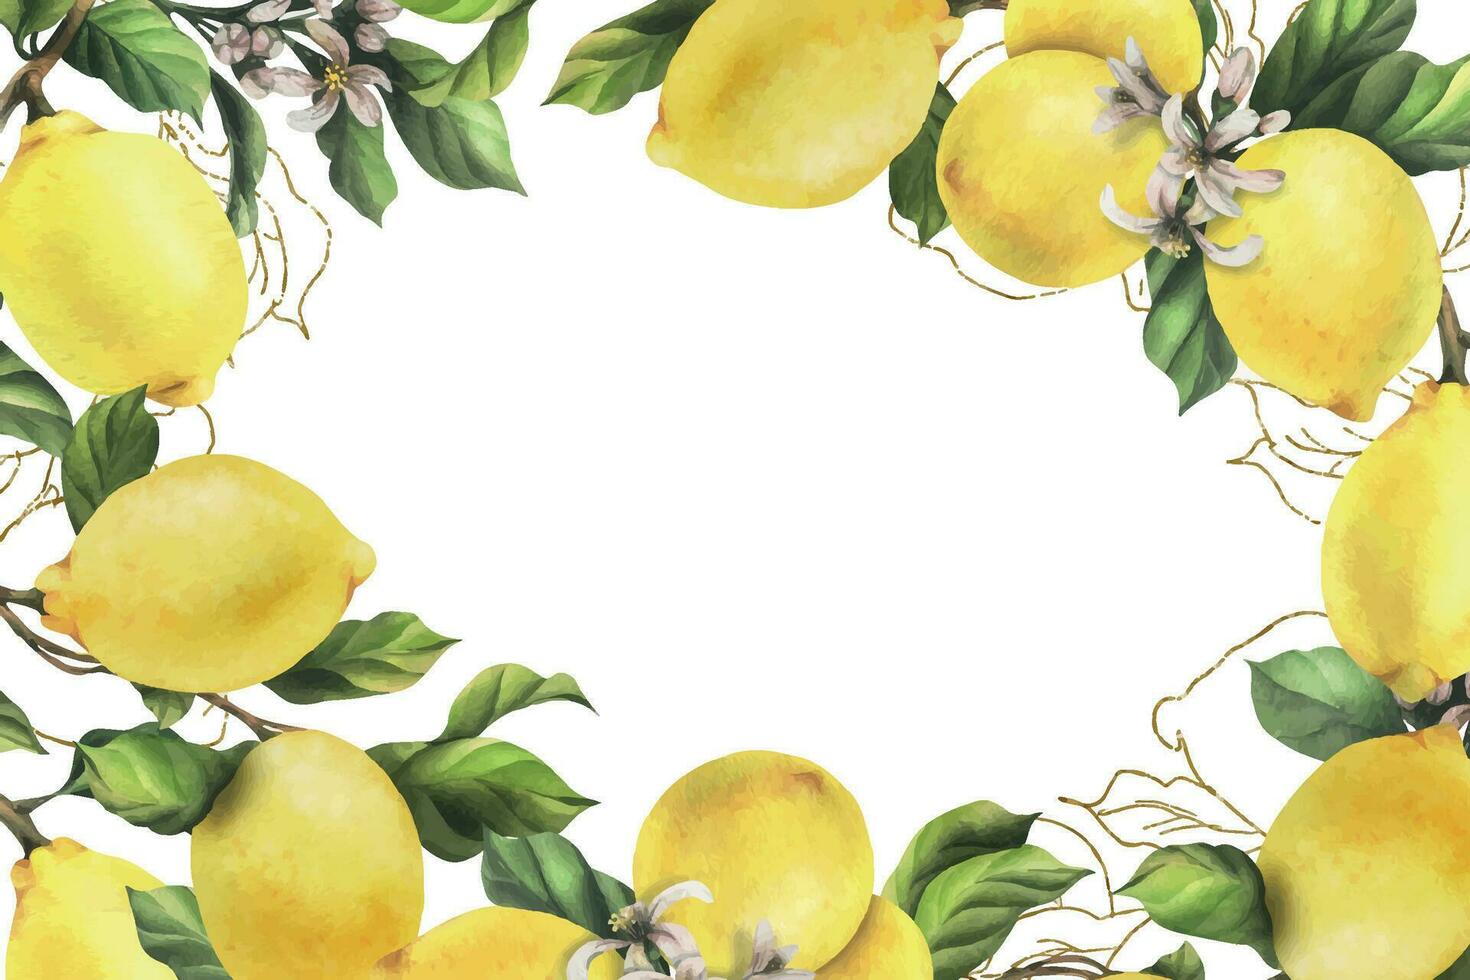 citrons sont jaune, juteux, mûr avec vert feuilles, fleur bourgeons sur le branches, entier et tranches. aquarelle, main tiré botanique illustration. cadre, modèle sur une blanc Contexte. vecteur eps